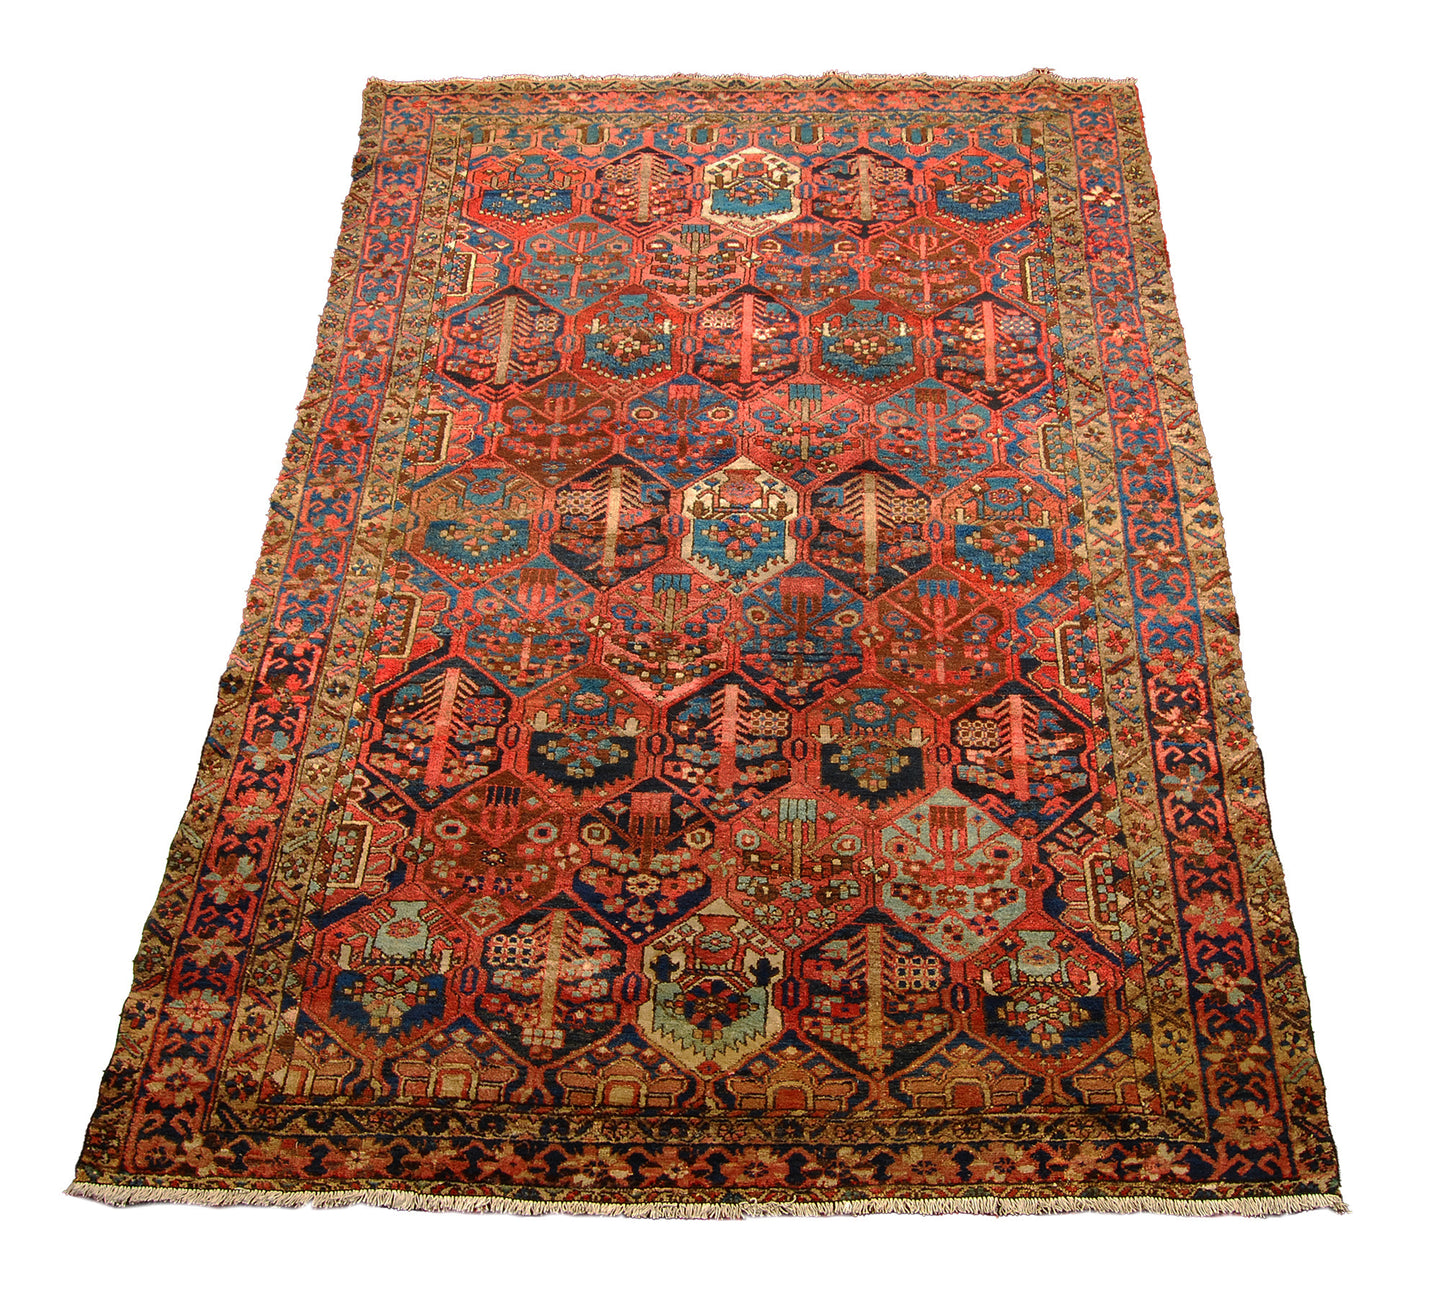 Ancient Antique Original Hand Made Carpets Tapis Teppich CM 295x200